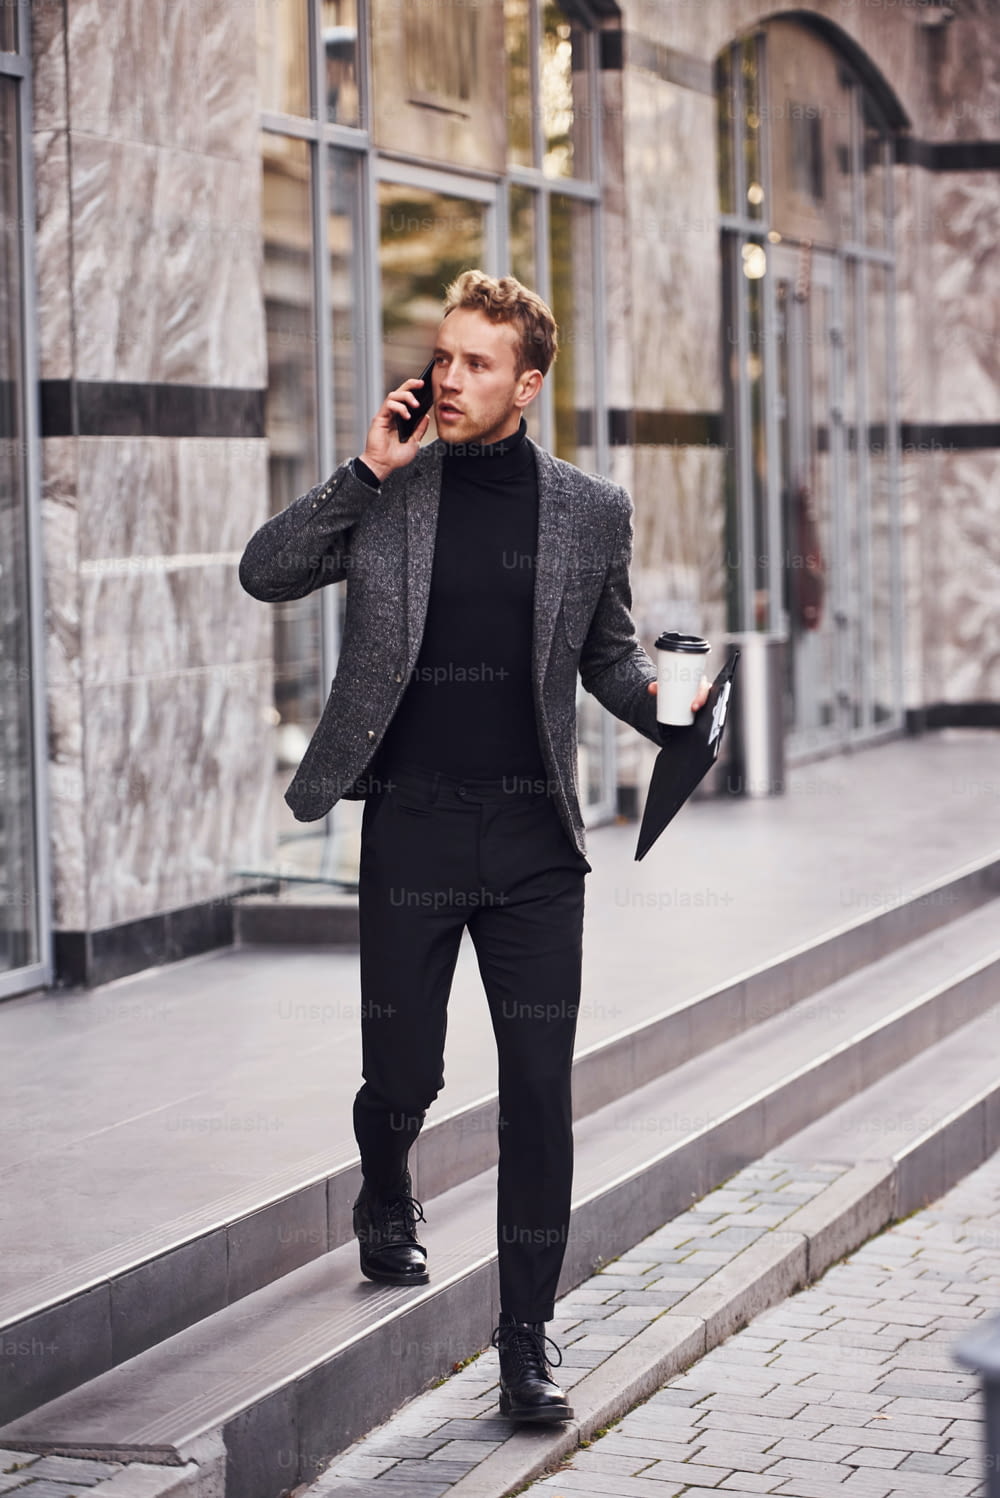 Homem em trajes formais elegantes com copo de bebida e bloco de notas nas mãos está do lado de fora contra o edifício moderno ter uma conversa ao telefone.